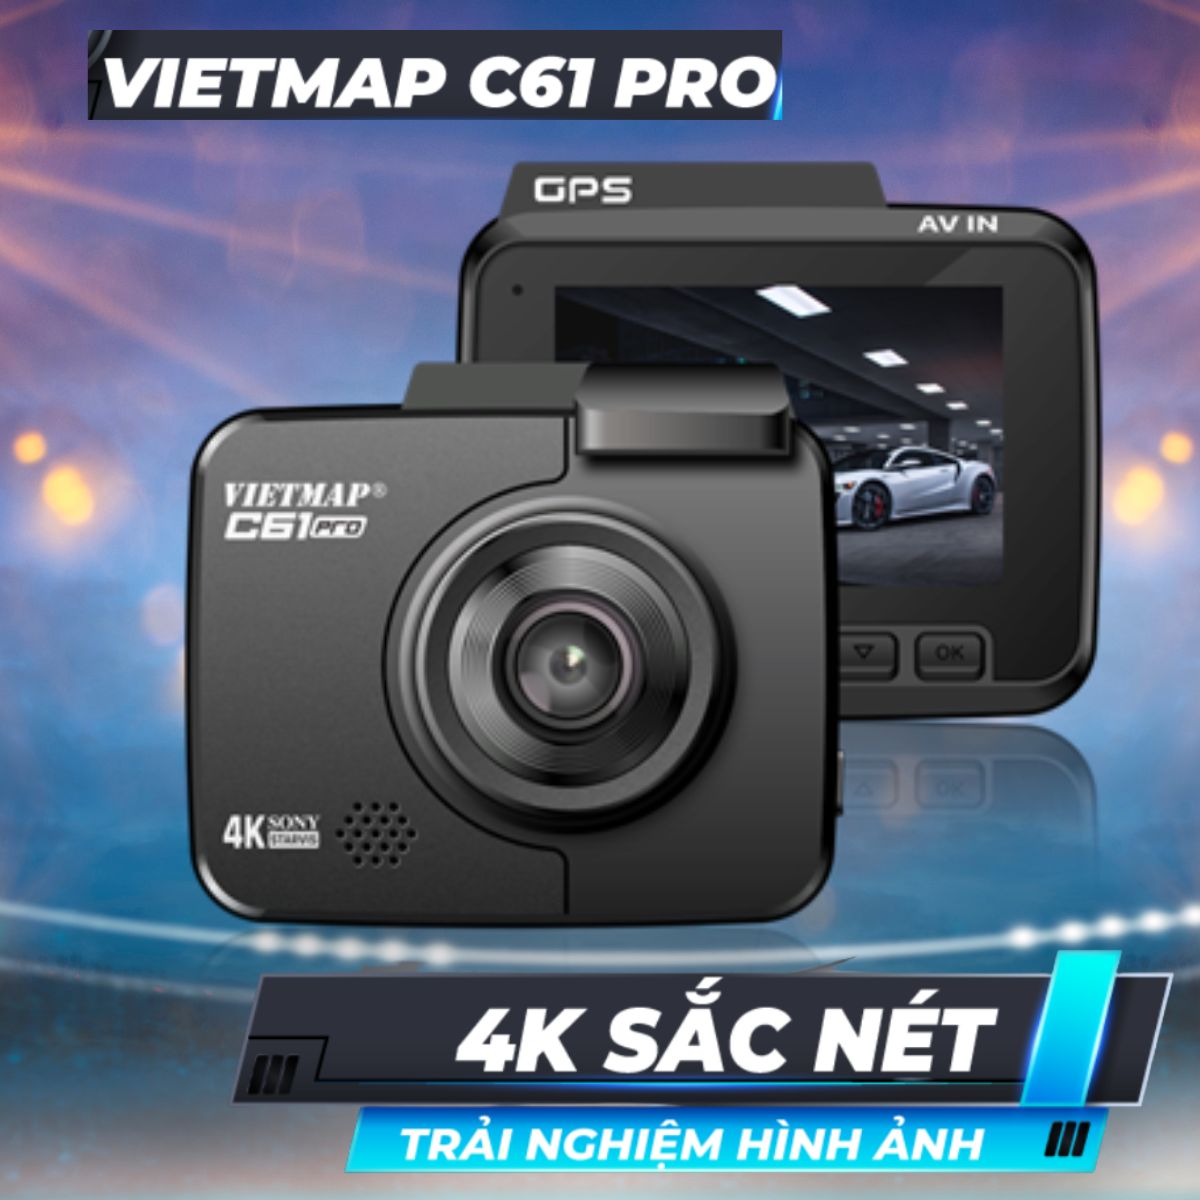 Camera hành trình 4k Vietmap C61 Pro cảnh báo tốc độ, camera giao thông, wifi truyền dữ liệu qua smartphone